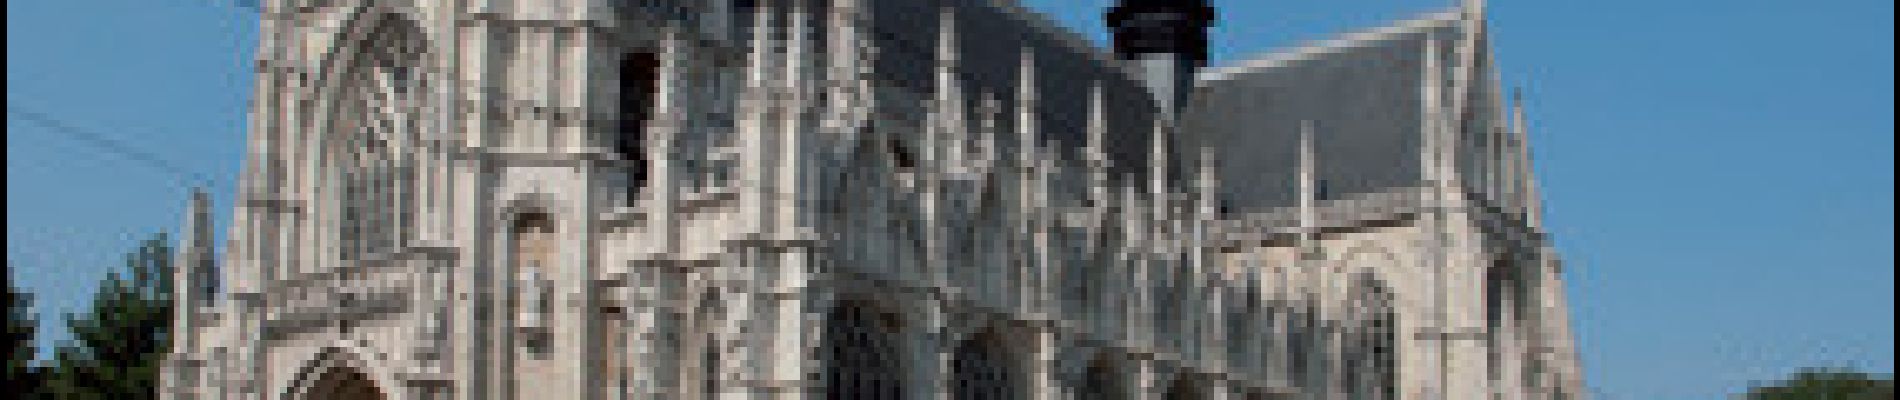 Point d'intérêt Ville de Bruxelles - Église Notre-Dame des Victoires au Sablon - Photo